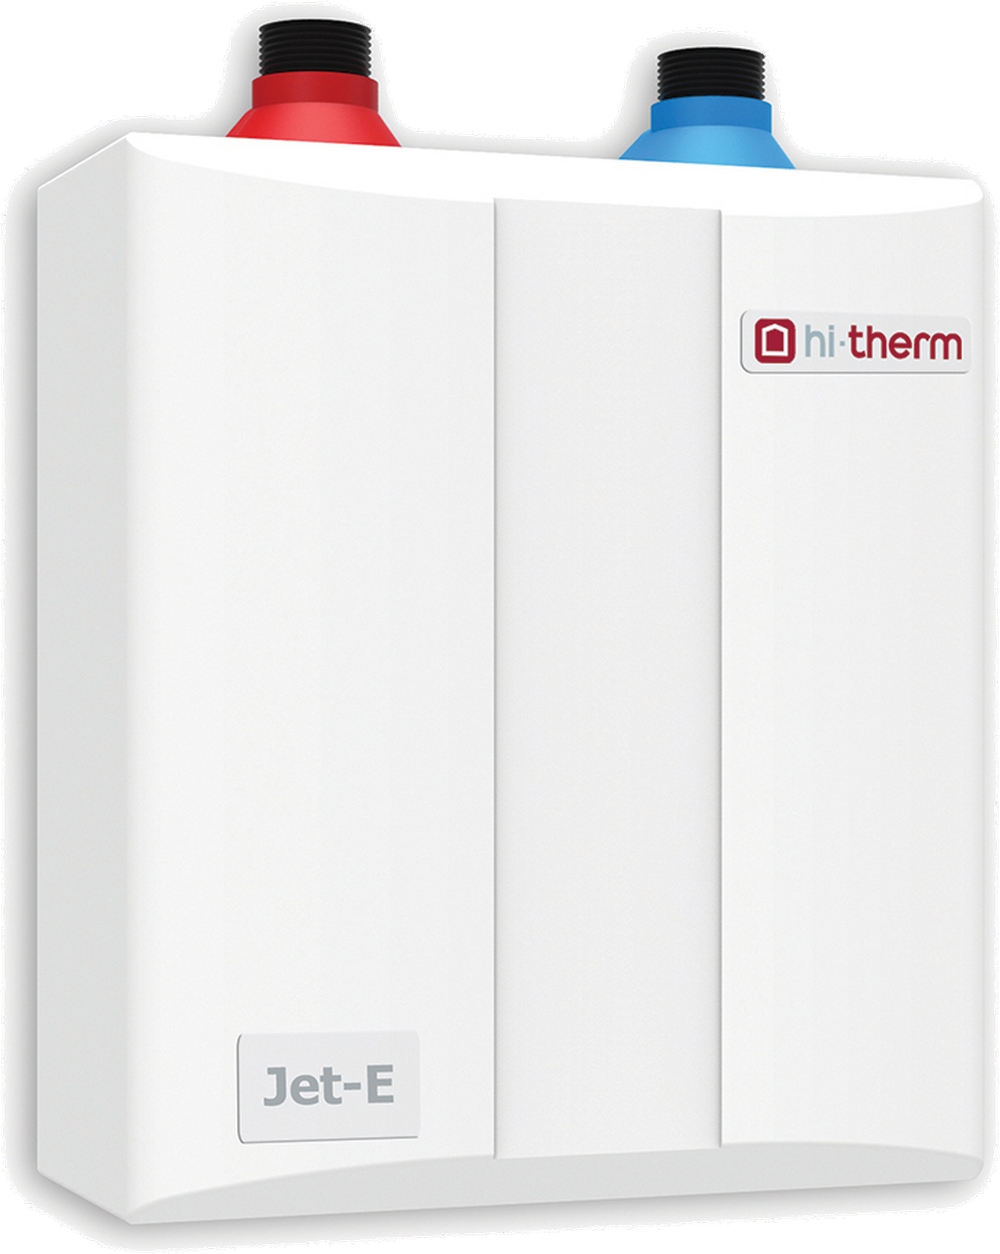 Отзывы проточный водонагреватель мощностью 4.5 киловатт Hi-Therm JET-E 4.5 в Украине